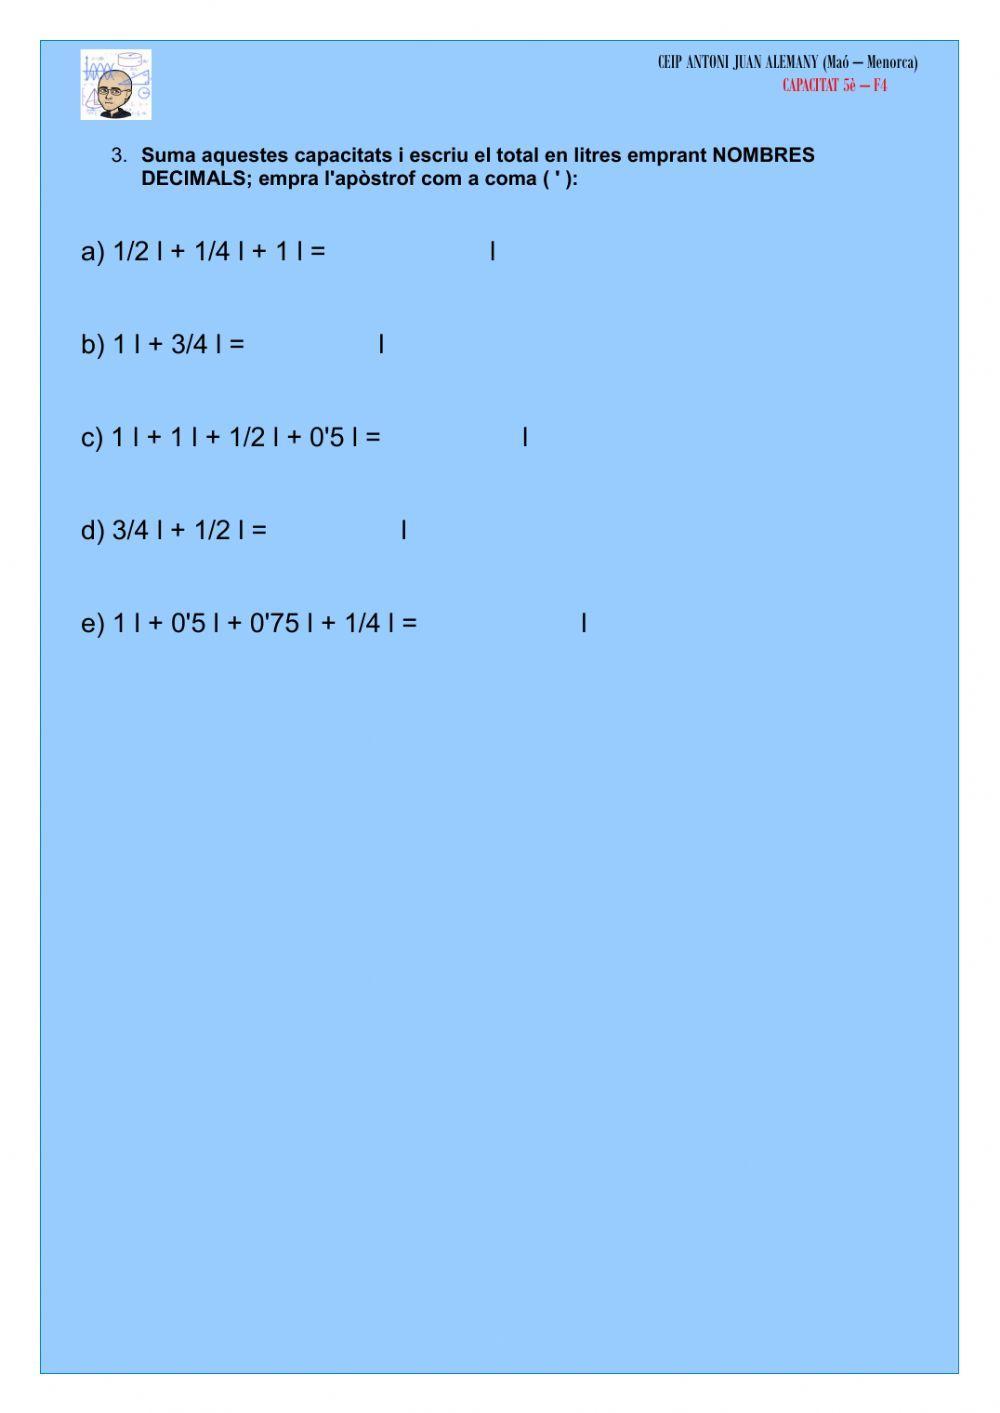 Les fraccions del litre i els decimals